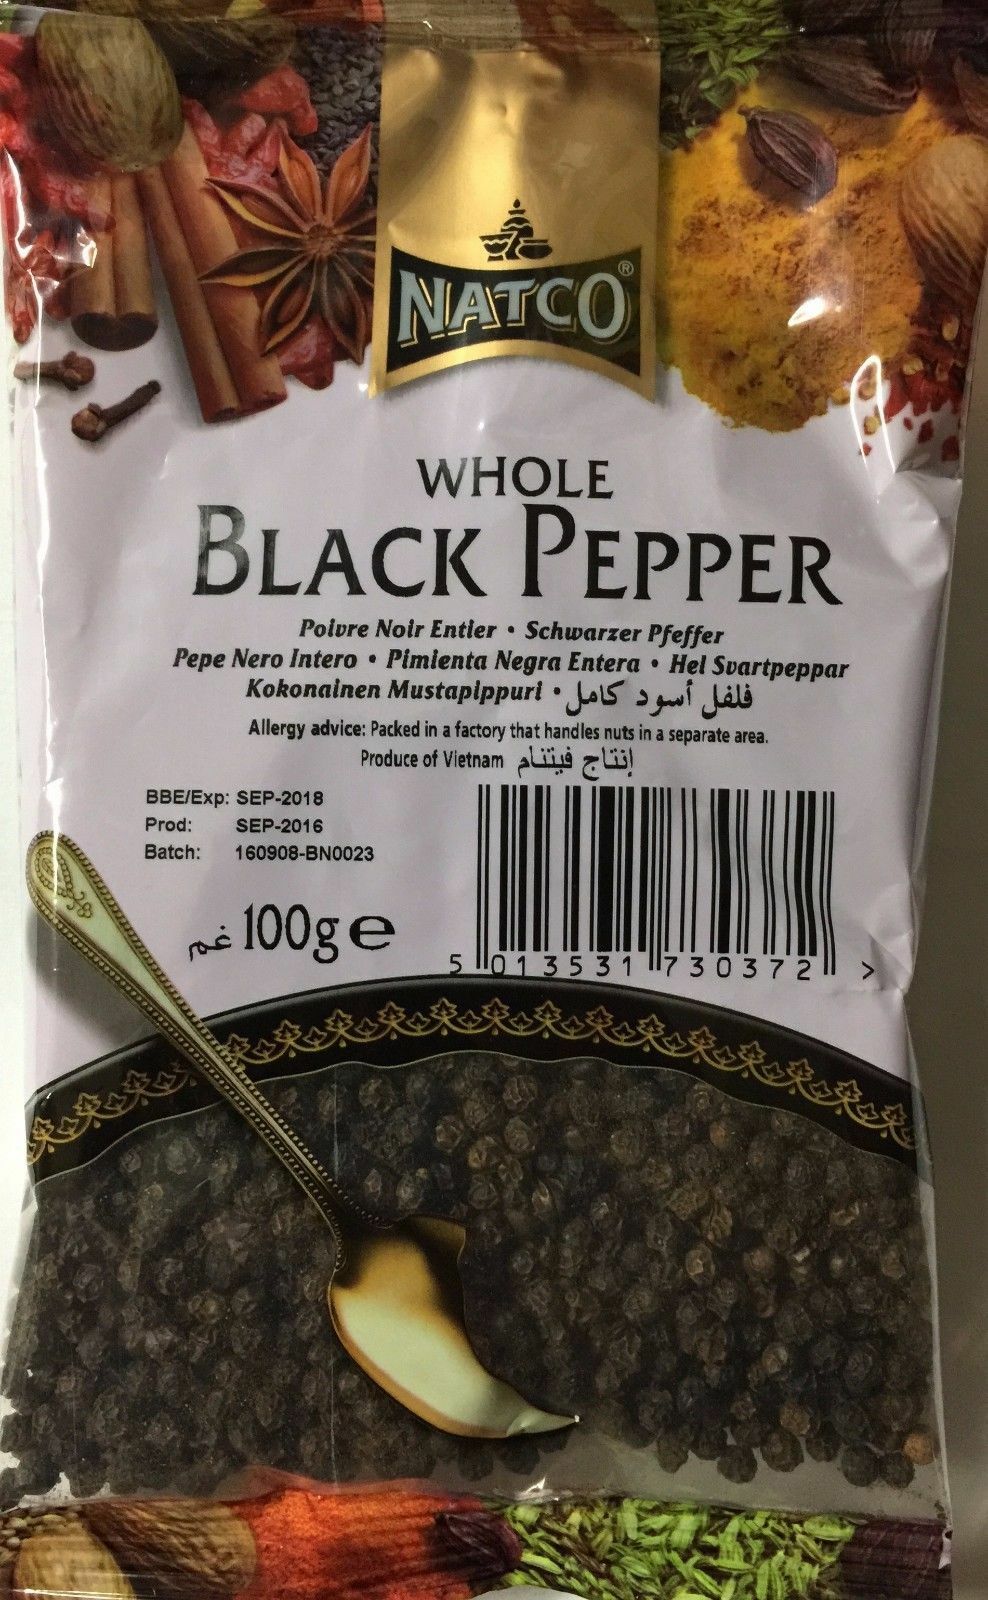 WHOLE BLACK PEPPER - 100g - NATCO